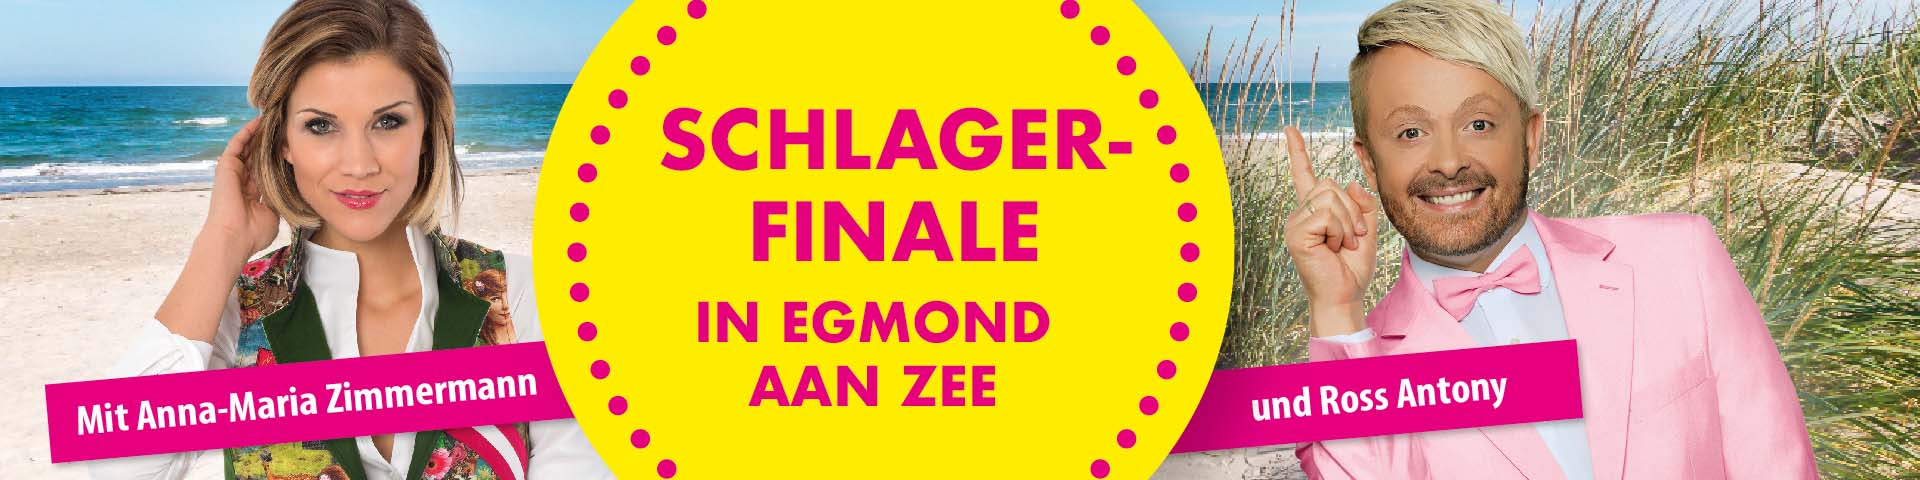 Egmond aan Zee Schlagerfinale Plakat